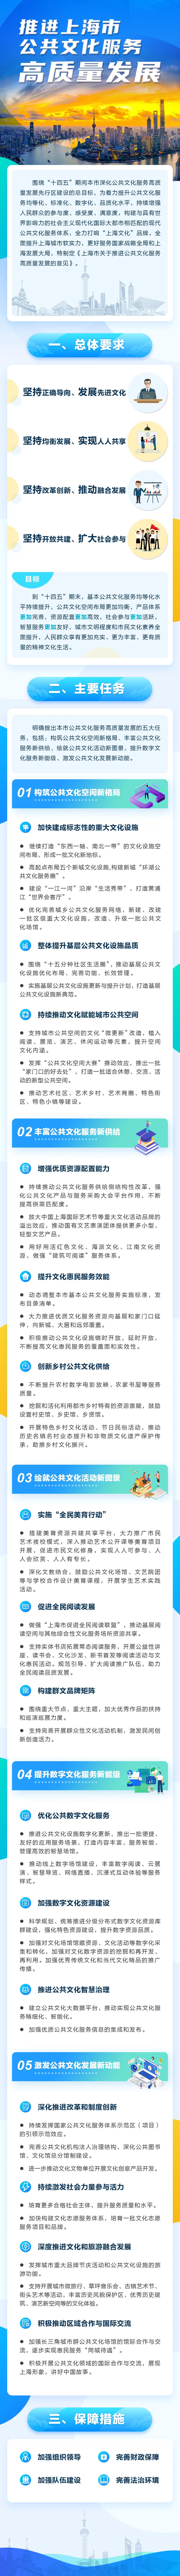 《上海市关于推进公共文化服务高质量发展的意见》.jpg